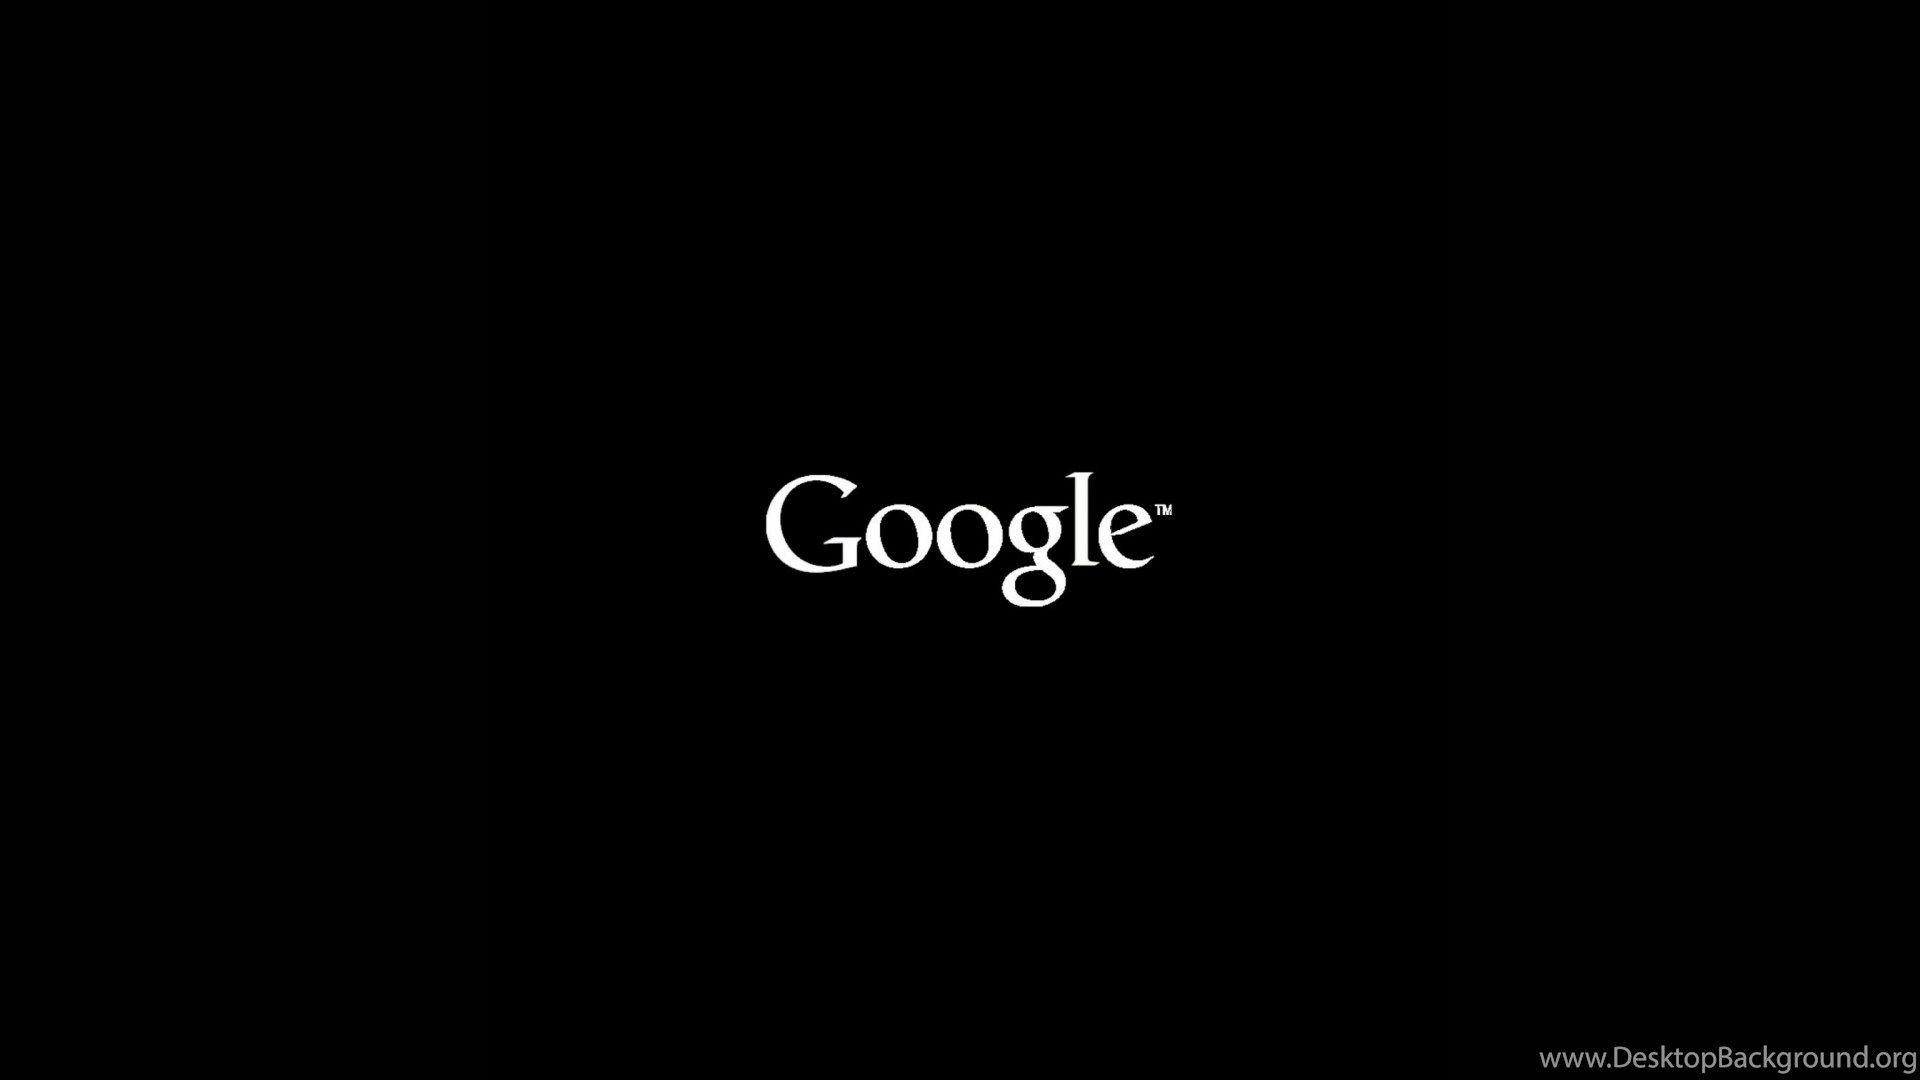 Bạn đã từng thấy nền đen Google chưa? Đó là một cách tuyệt vời để cho mắt bạn được nghỉ ngơi khi sử dụng công cụ tìm kiếm phổ biến nhất thế giới này. Hãy xem hình ảnh liên quan để cảm nhận cảm giác thú vị của nền đen này!